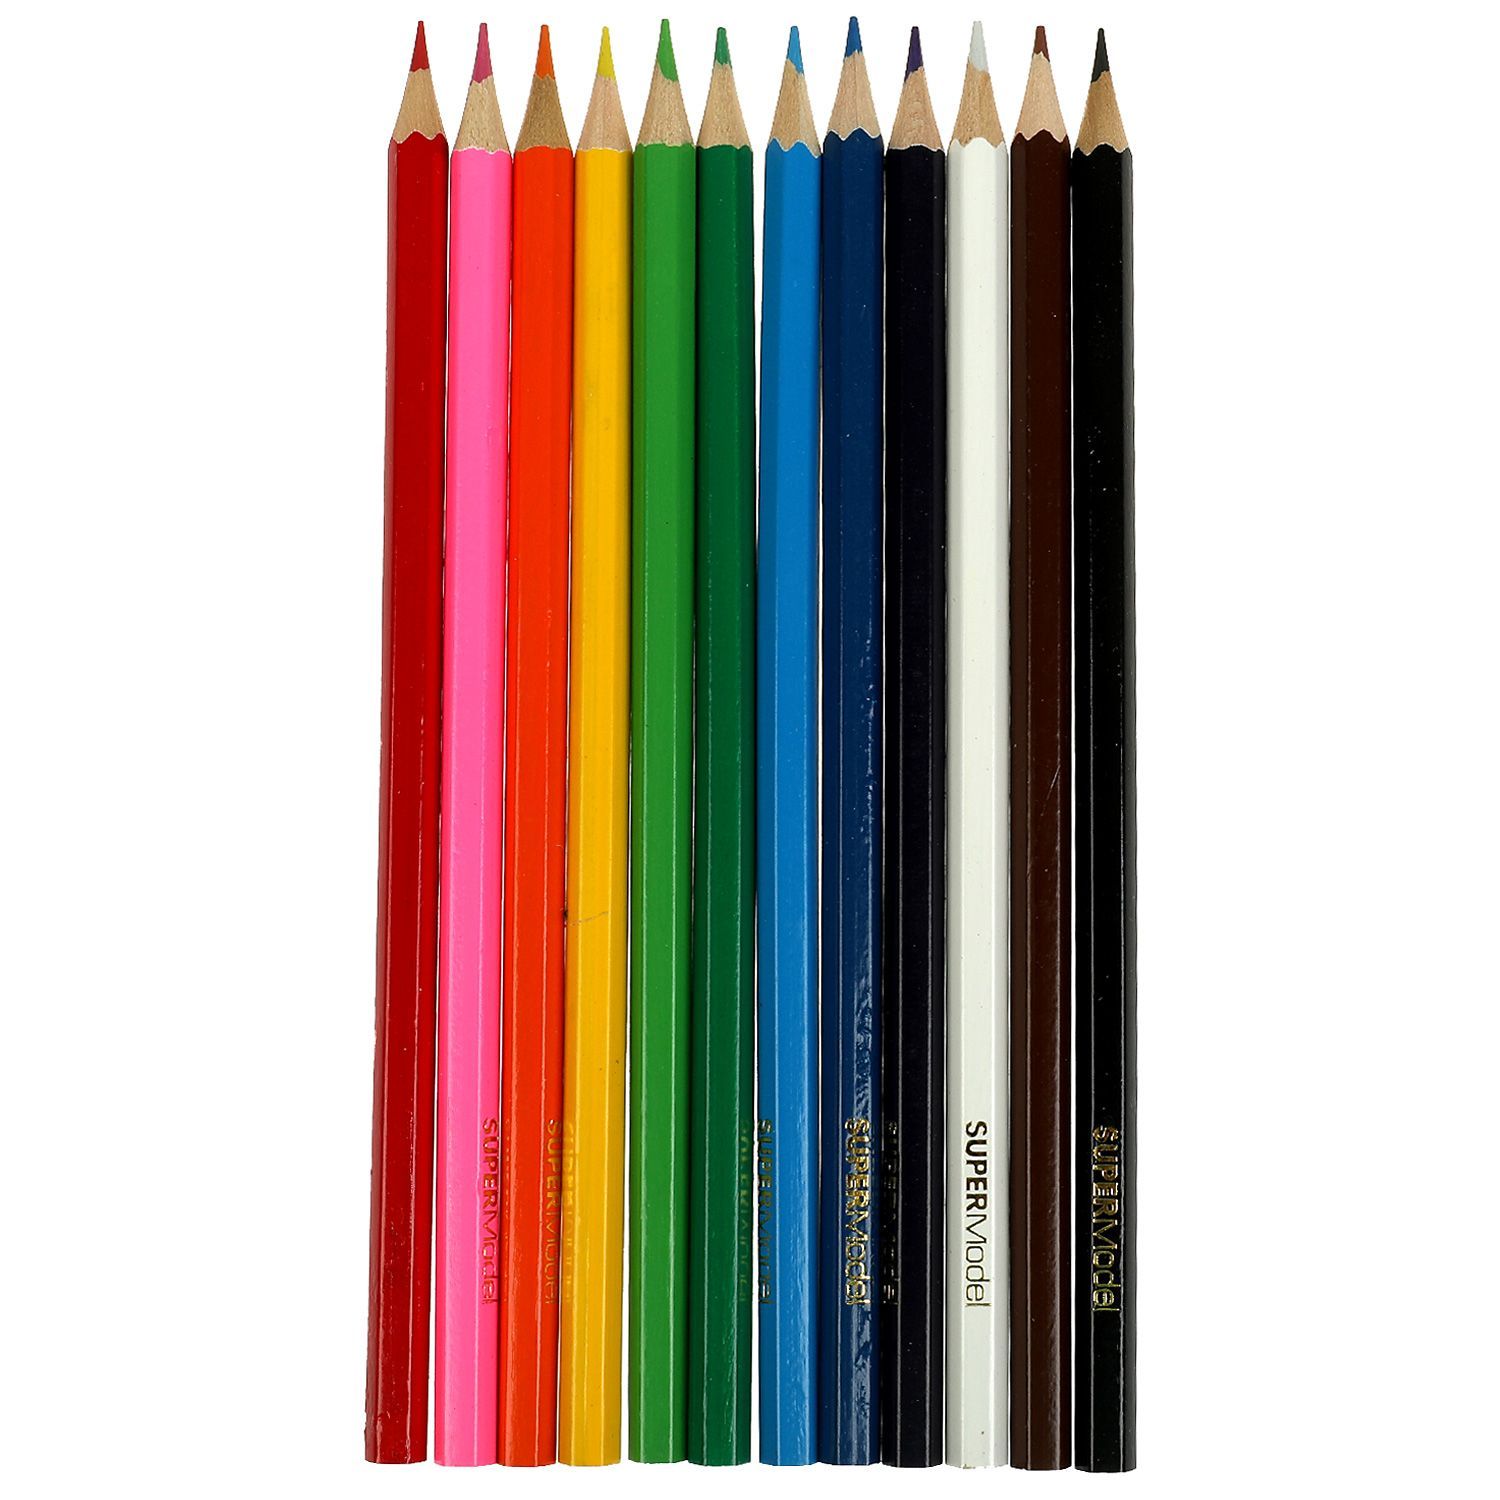 Из пенала в котором лежат 8 простых и 12 цветных карандашей